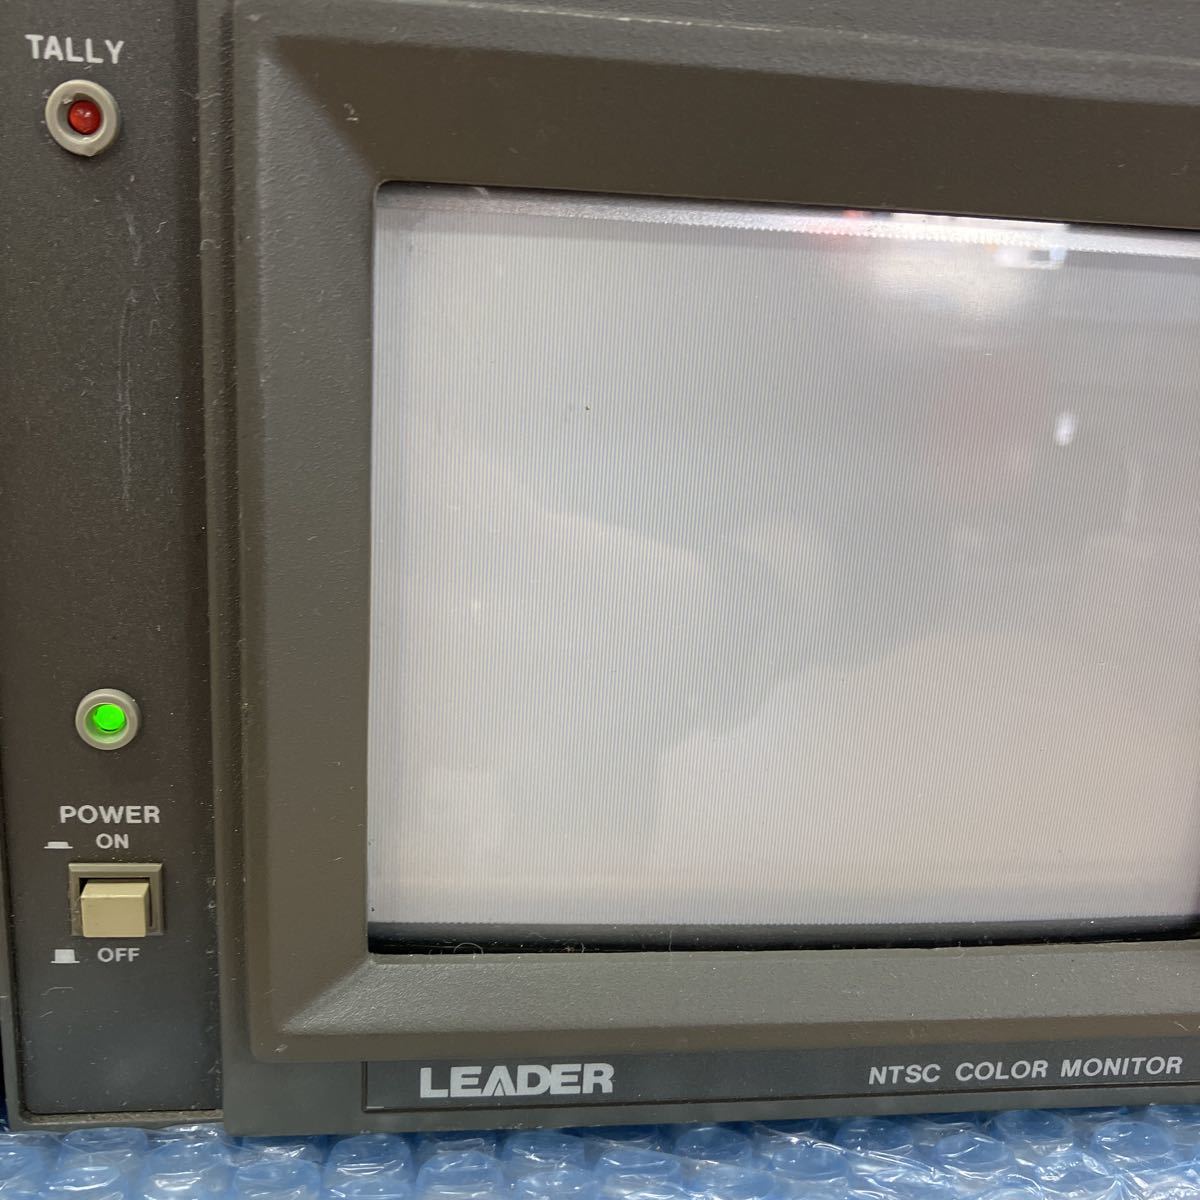 LEADER Leader электронный LR-2400V-I подставка для кейс 5130 цвет монитор Tektronix 1750 волна форма bektoru монитор электризация проверка только O-126